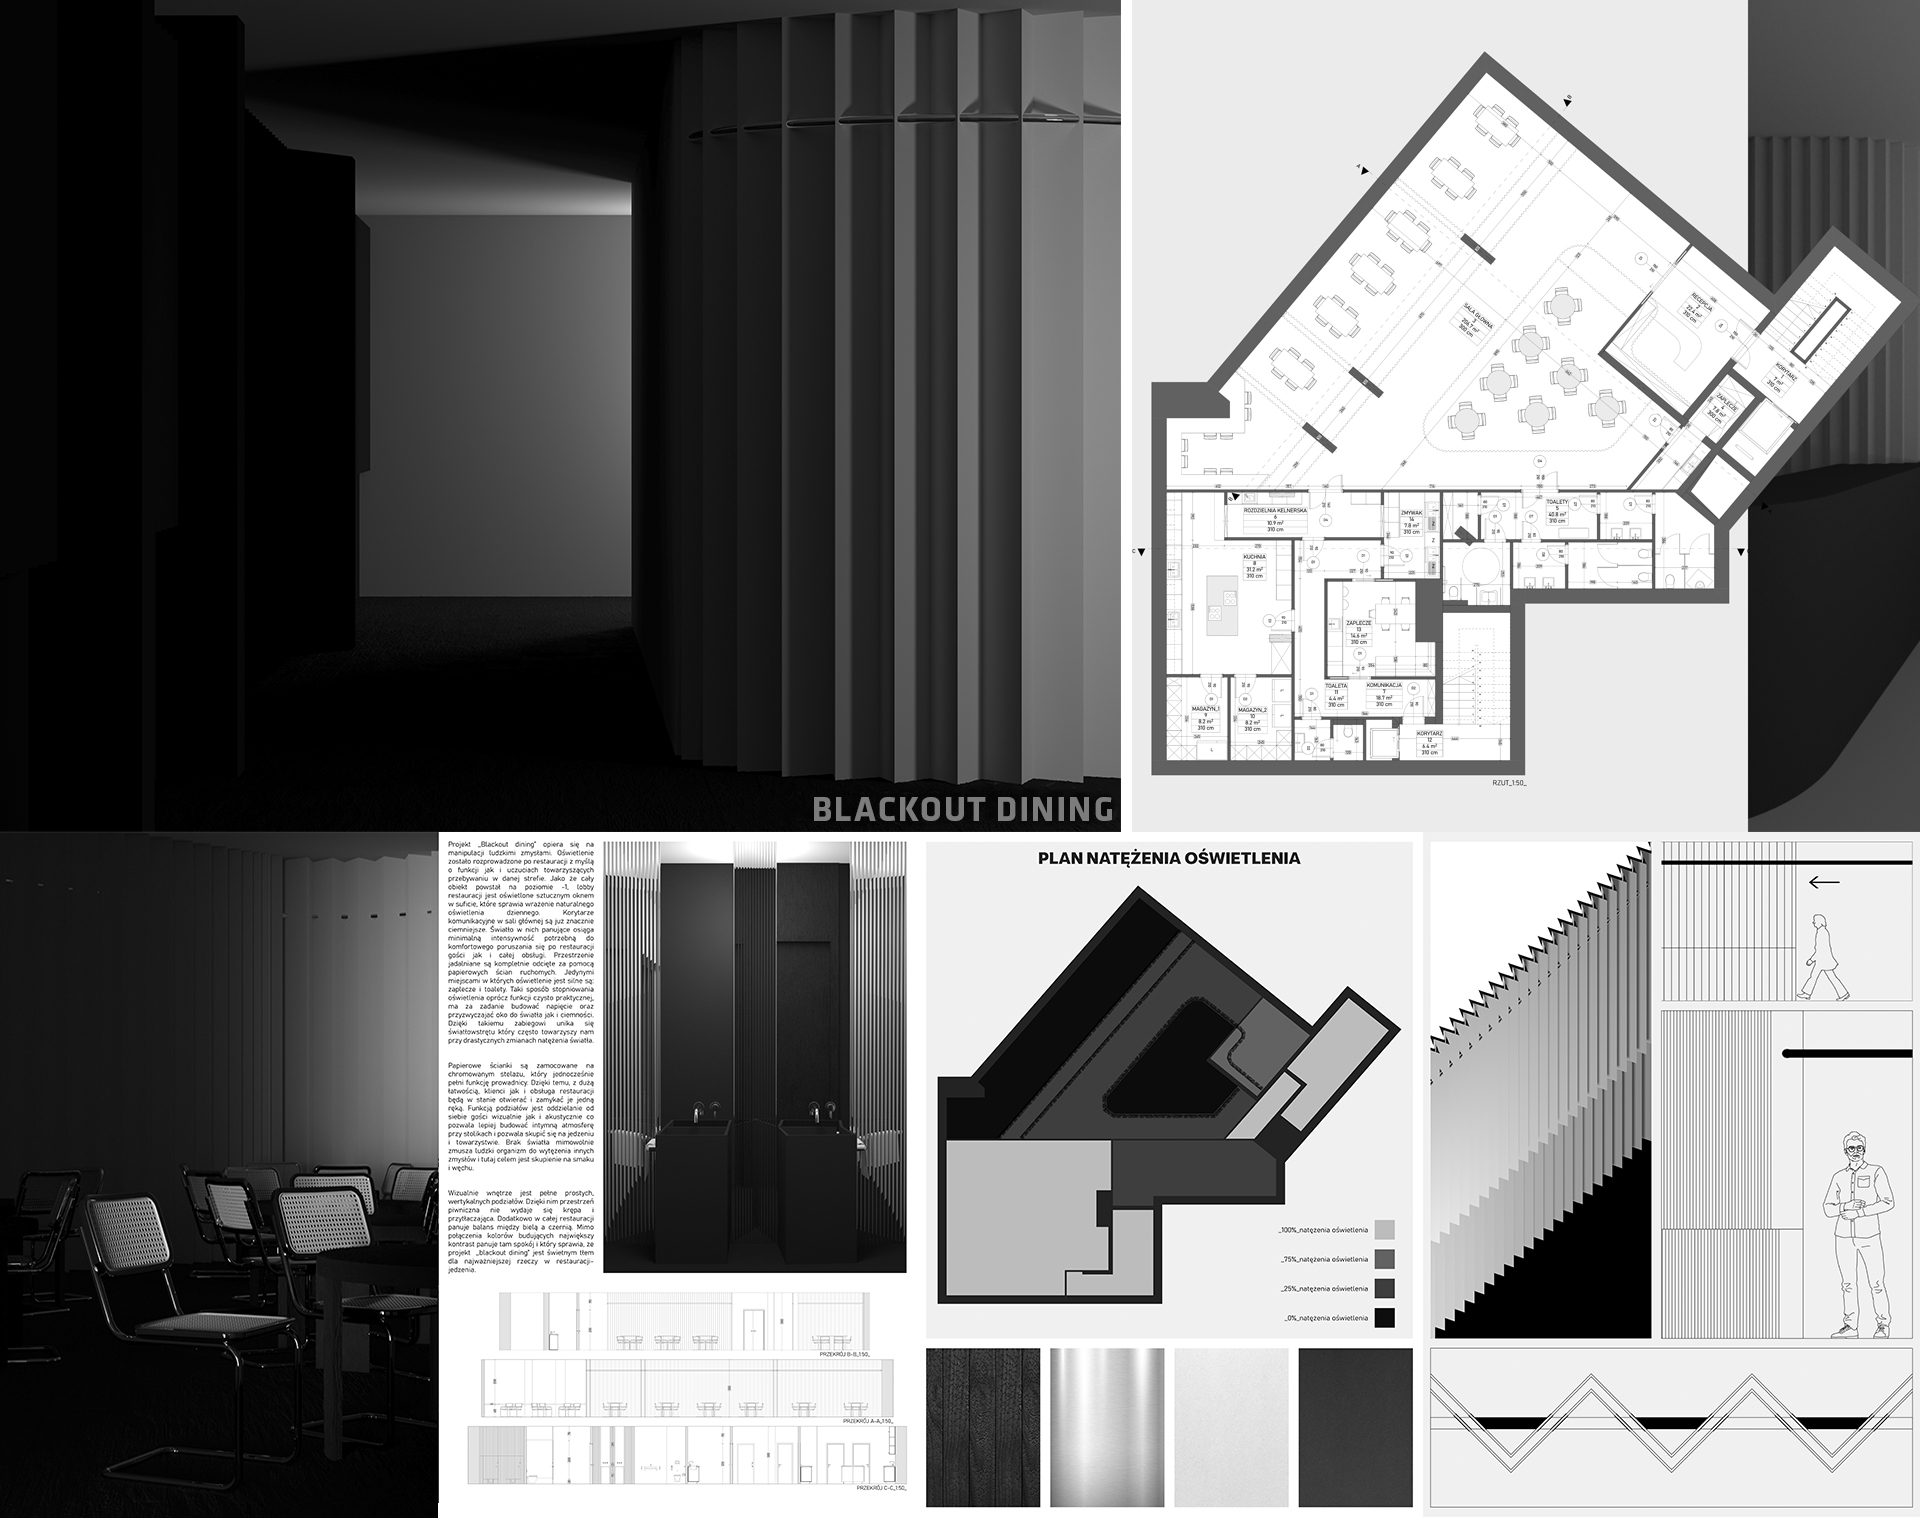 Obraz zawierający rysunki techniczne, schematy rysunkowe wyjaśnieniające decyzje projektowe, zastosowane materiały oraz wizualizacje projektowanych wnętrz restauracji. Wnętrze zaprojektowane w bieli i czerni. 